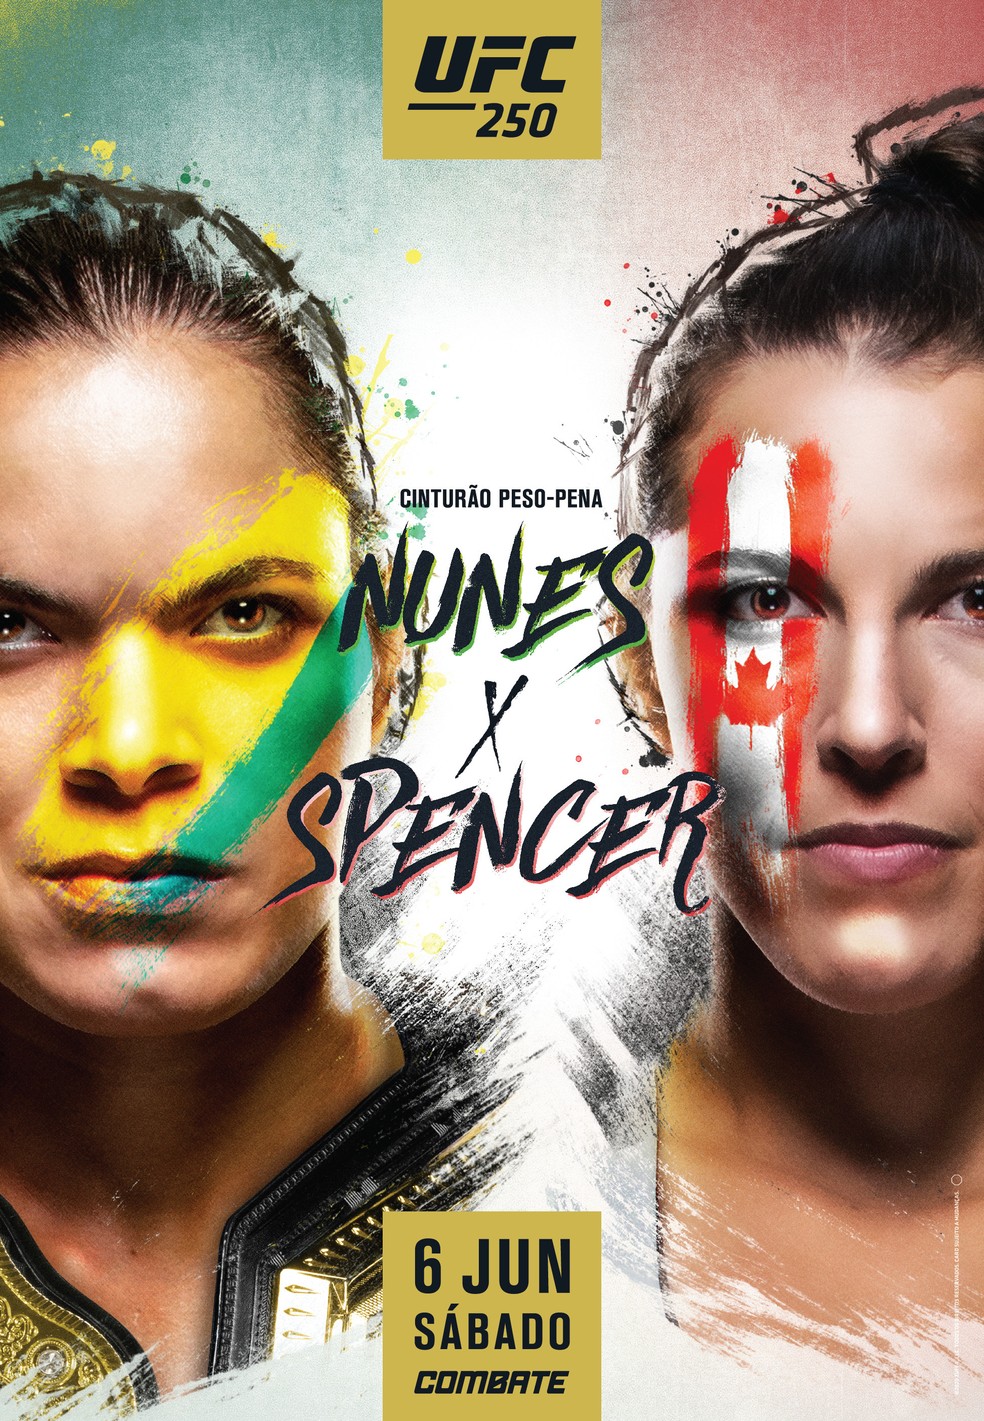 UFC revela pôster de luta entre Amanda Nunes e Felicia Spencer ...